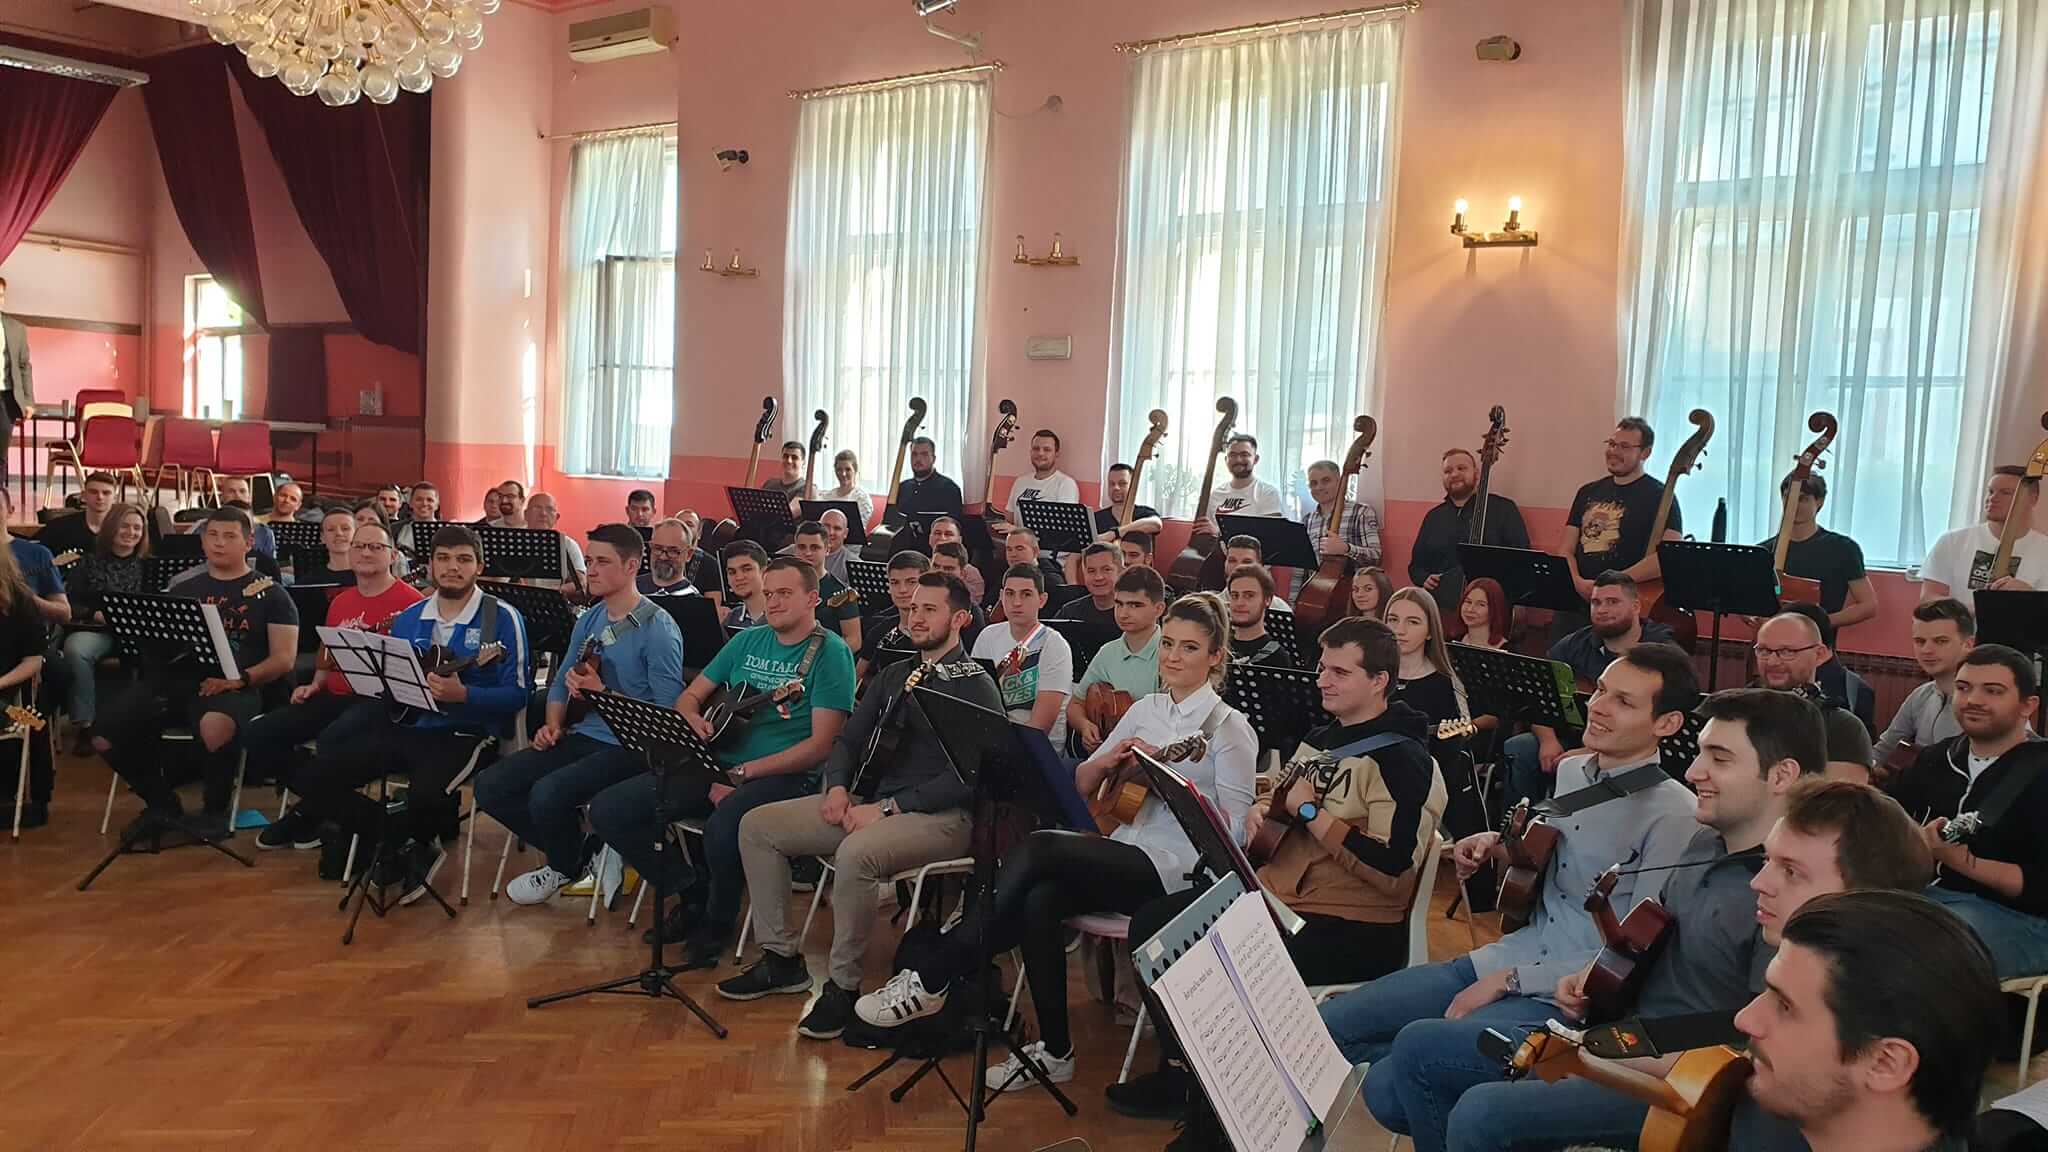 Požega.eu | Saša Botički pripremio požeške tamburaše za Šokačku rapsodiju na kojoj će u Lisinskom zapjevati Požežanka Bruna Oberan-Bošković